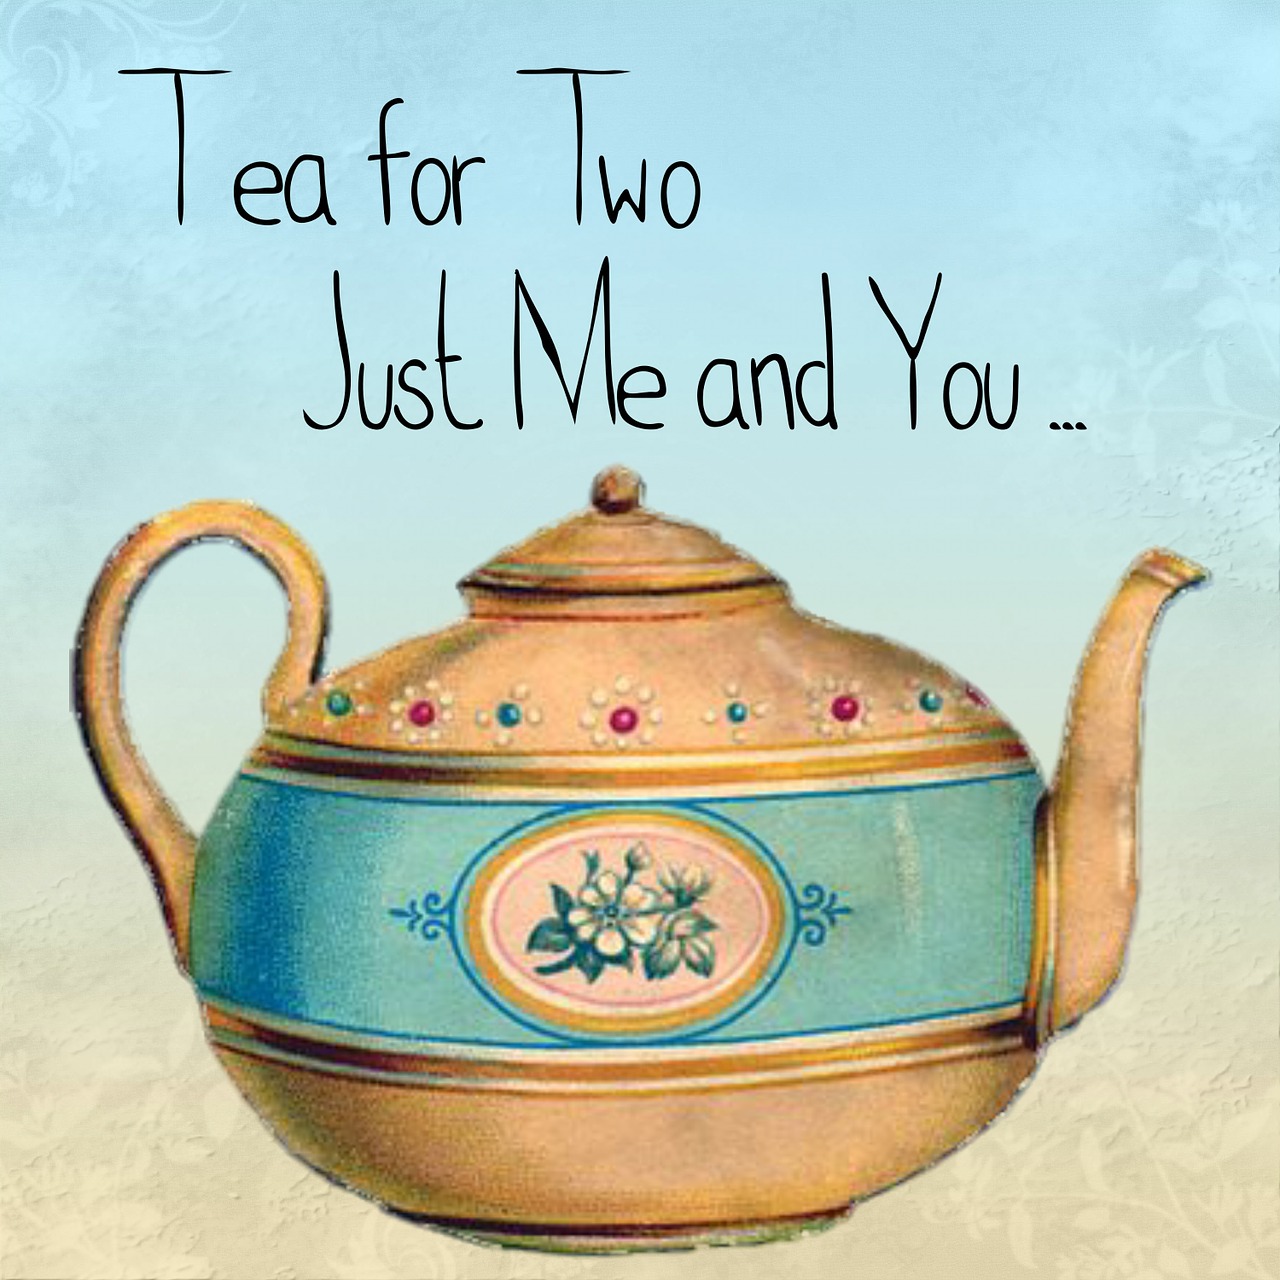 tea teapot quote free photo